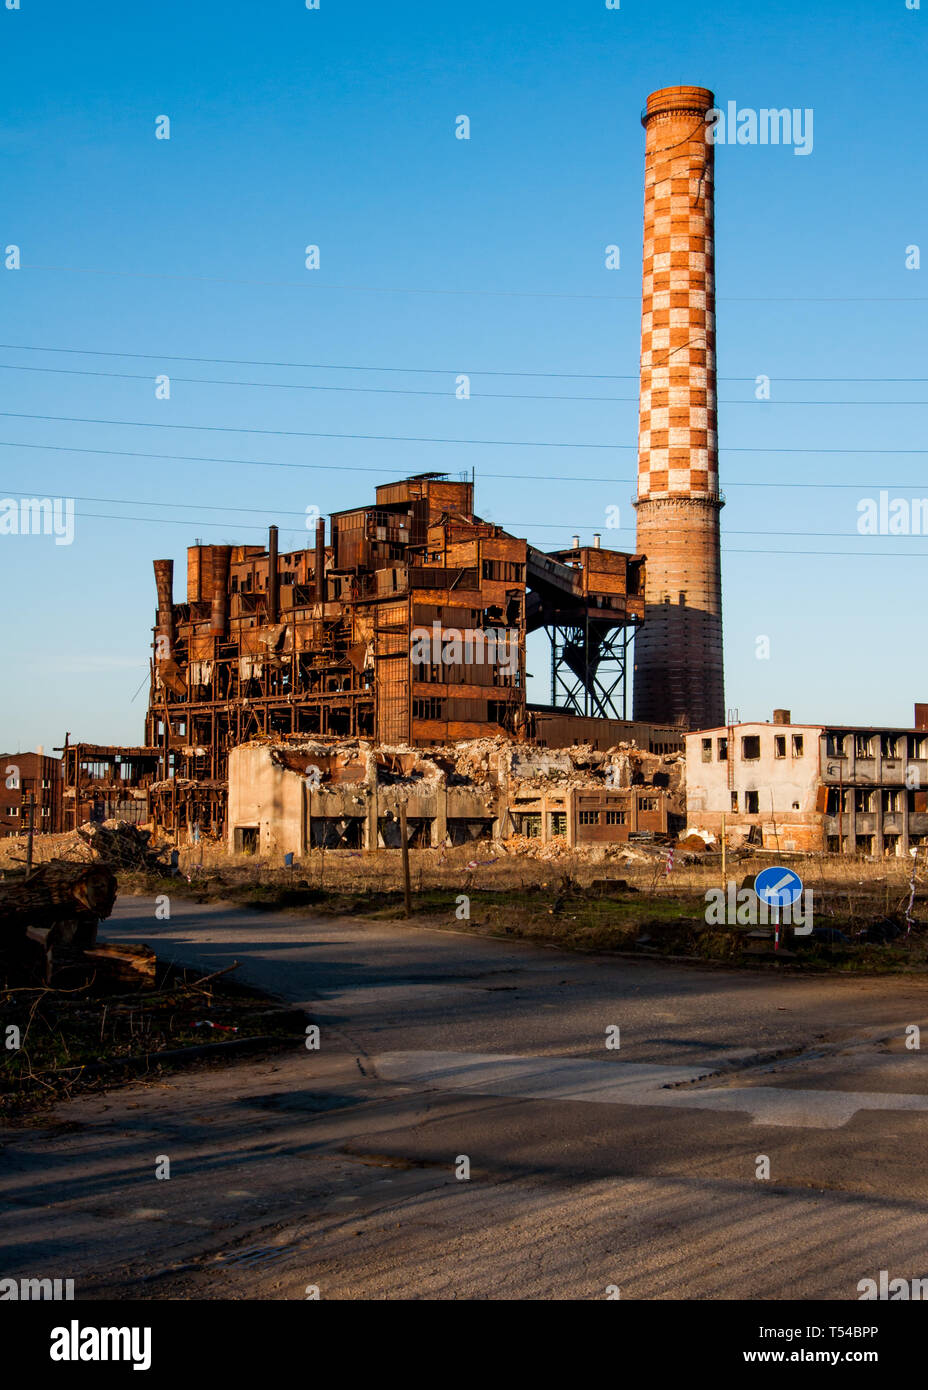 Ruines de l'ancienne usine de traitement de minerai de fer (aglomerace) à Ostrava, République tchèque Vitkovice Banque D'Images